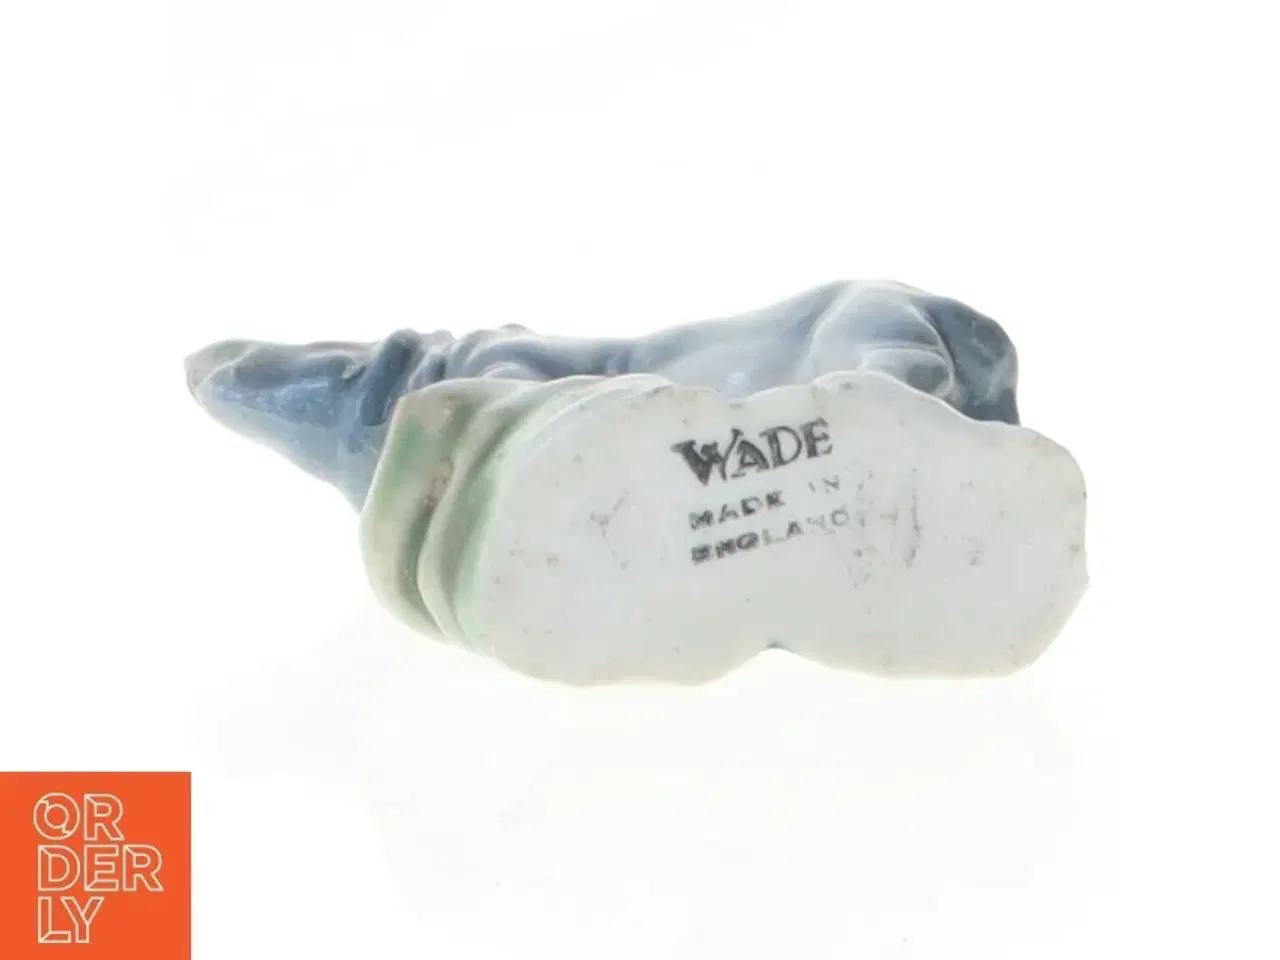 Billede 2 - Porcelænsfigur, næsehorn fra Wade (str. 5 cm)